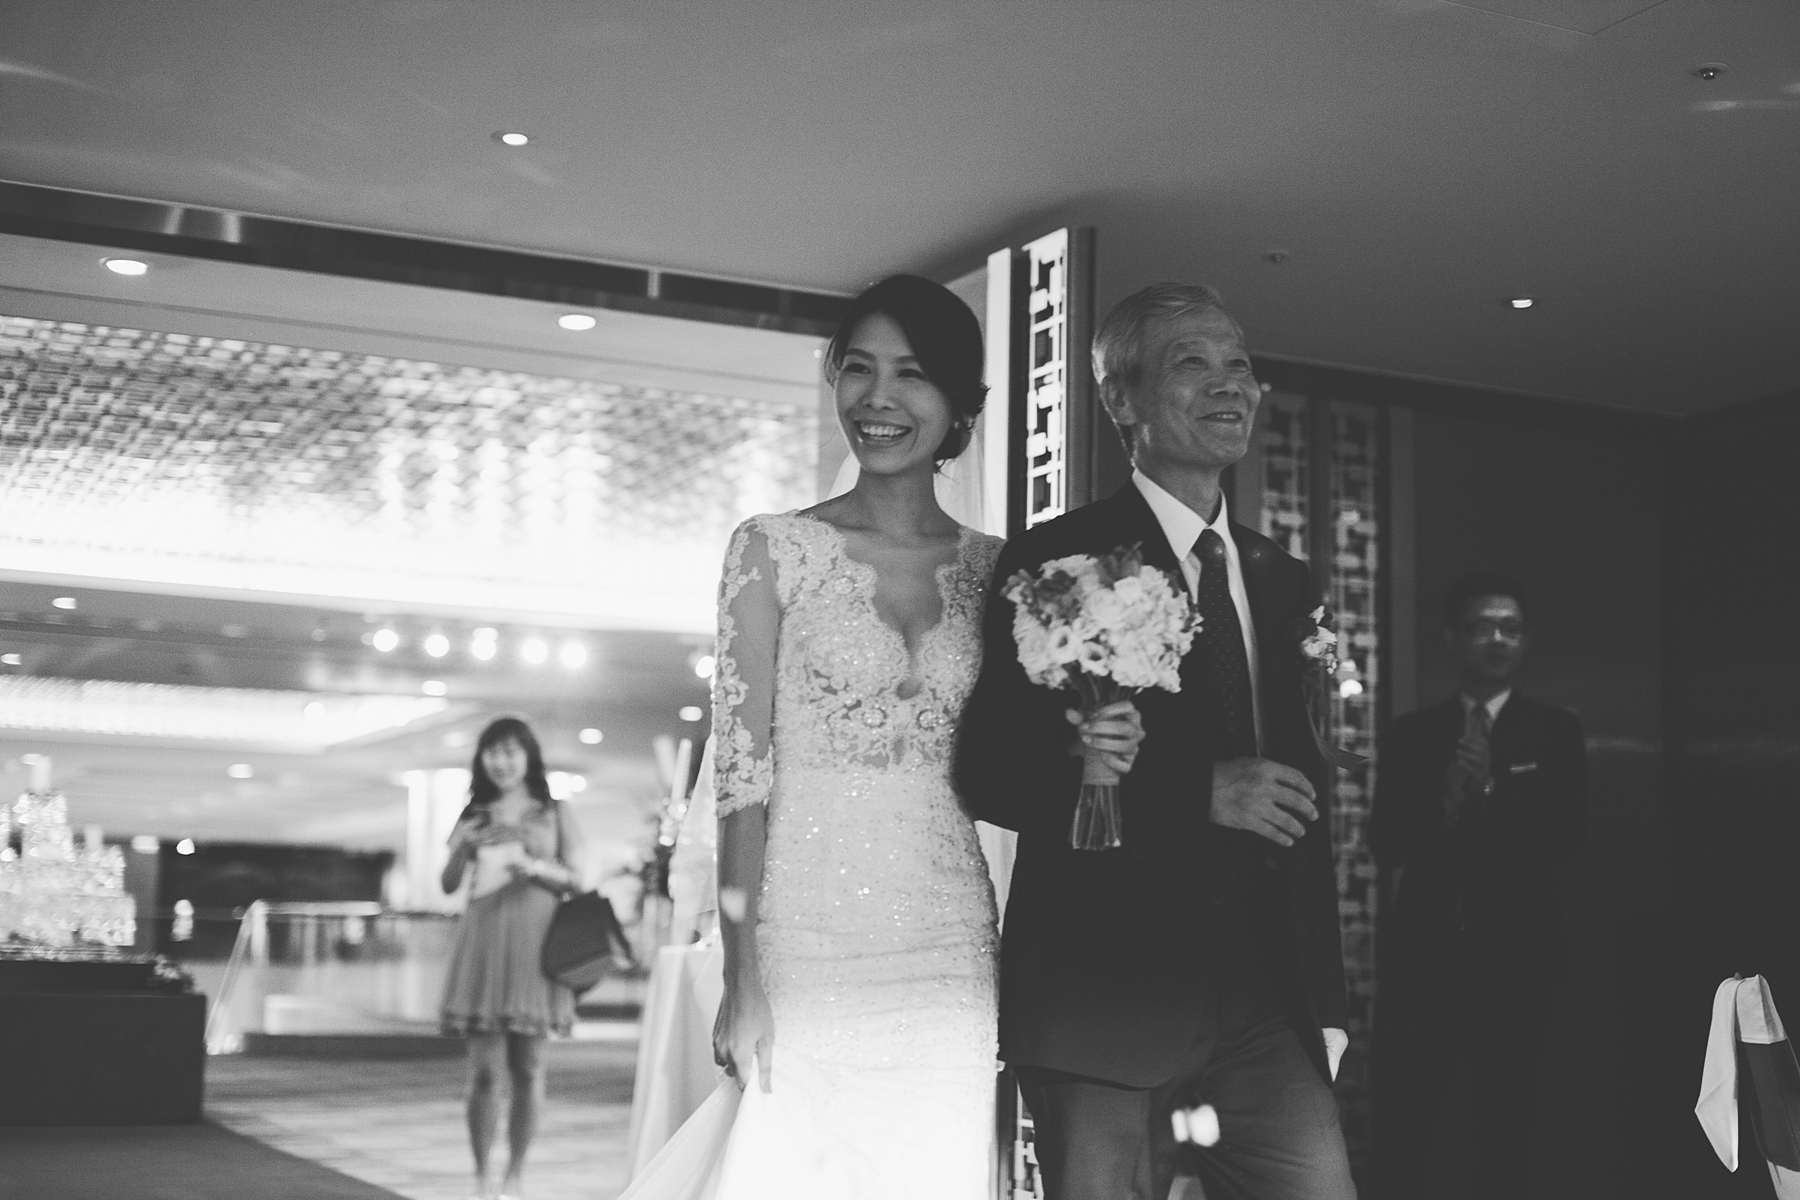 婚禮攝影,婚攝,婚禮記錄,台北,晶華酒店,底片風格,自然